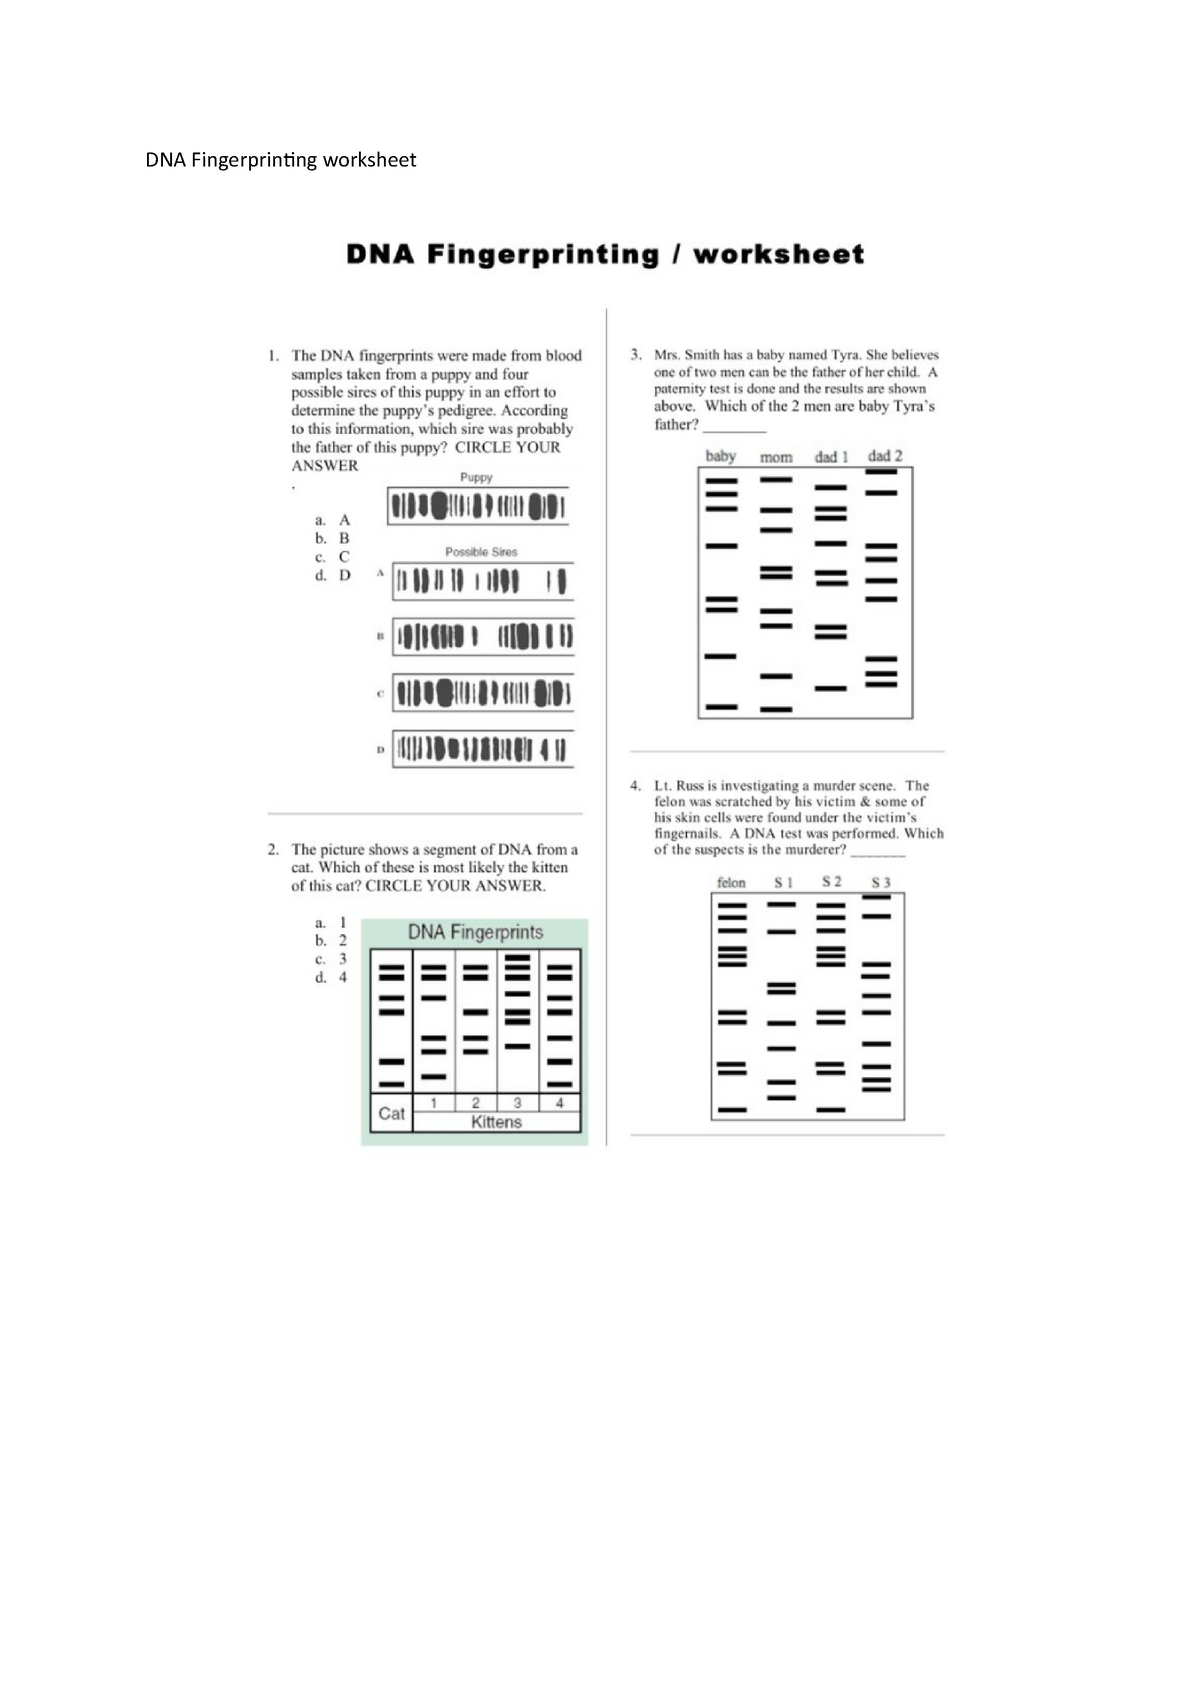 DNA Fingerprinting worksheet - F21FD - StuDocu With Regard To Dna Fingerprinting Worksheet Answers